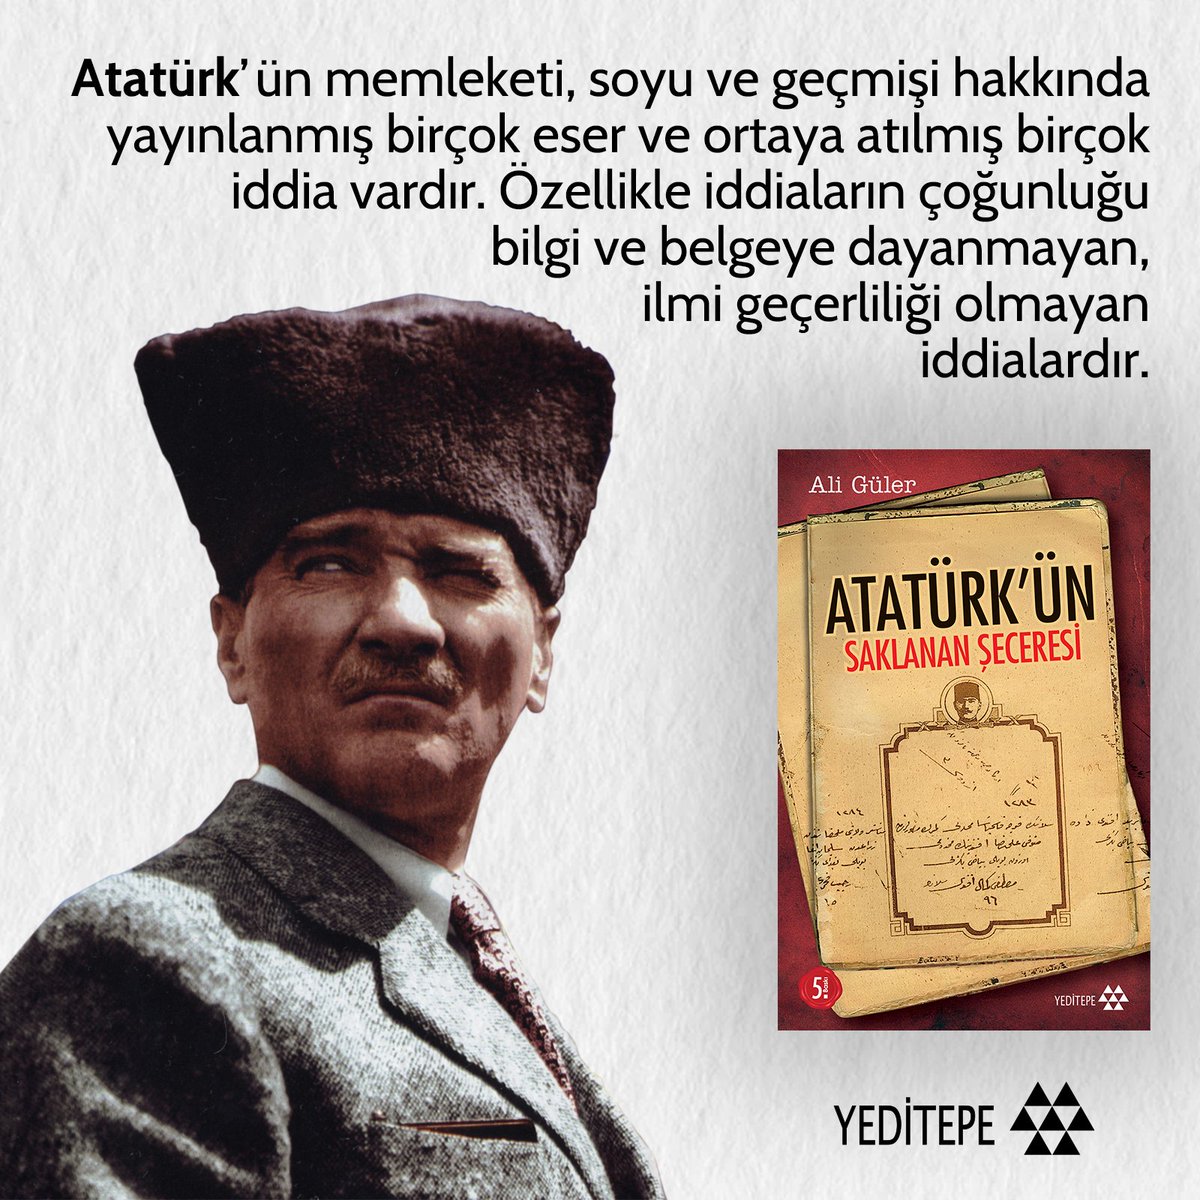 Atatürk'ün Saklanan Şeceresi'nde, yeni bilgiler ve belgeler ışığında Atatürk'ün soyağacı ortaya konmuştur.